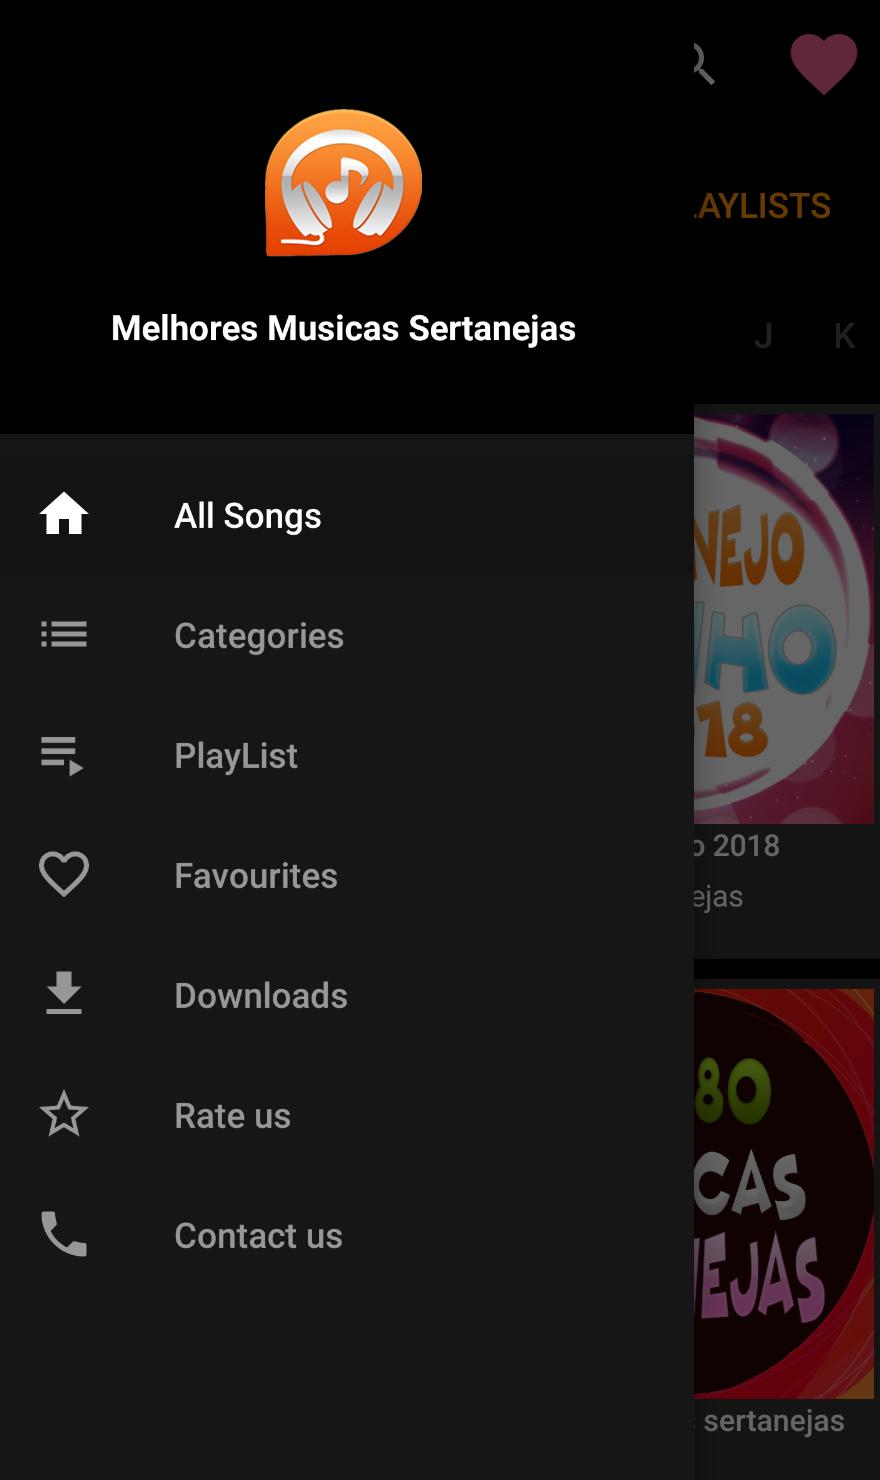 Melhores Musicas Sertanejas 2019 for Android - APK Download